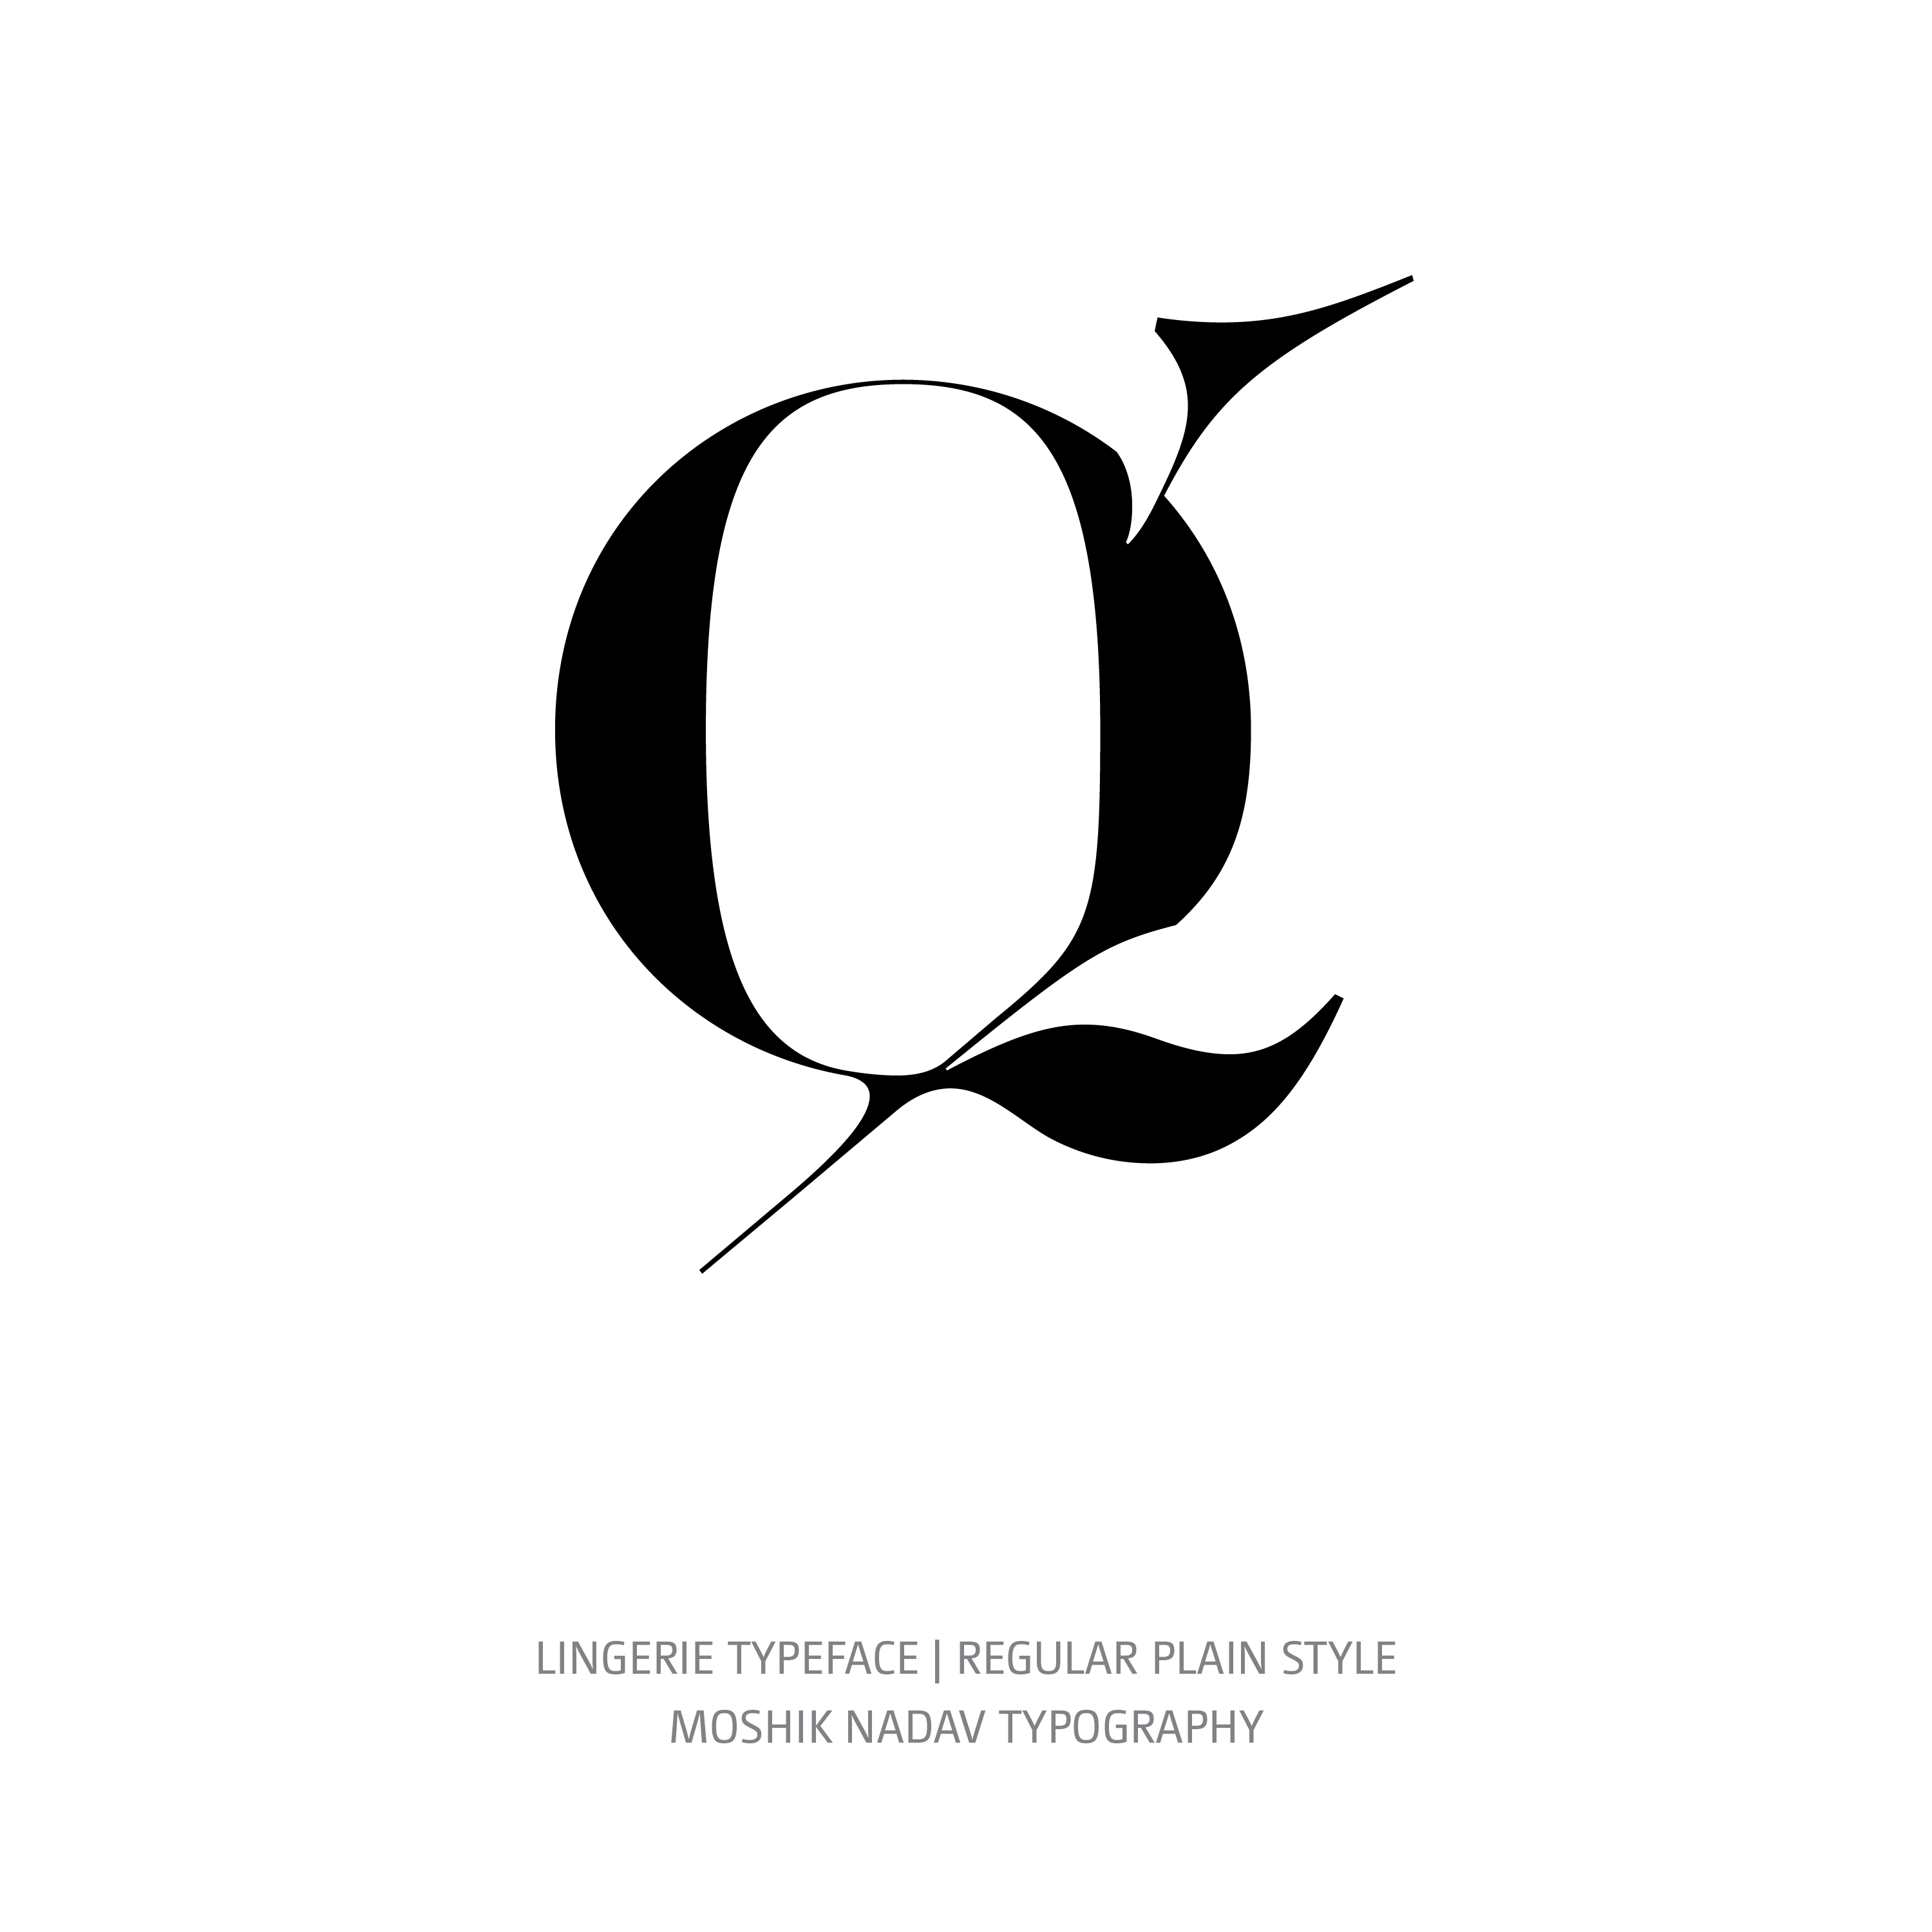 Lingerie Typeface Regular Plain q